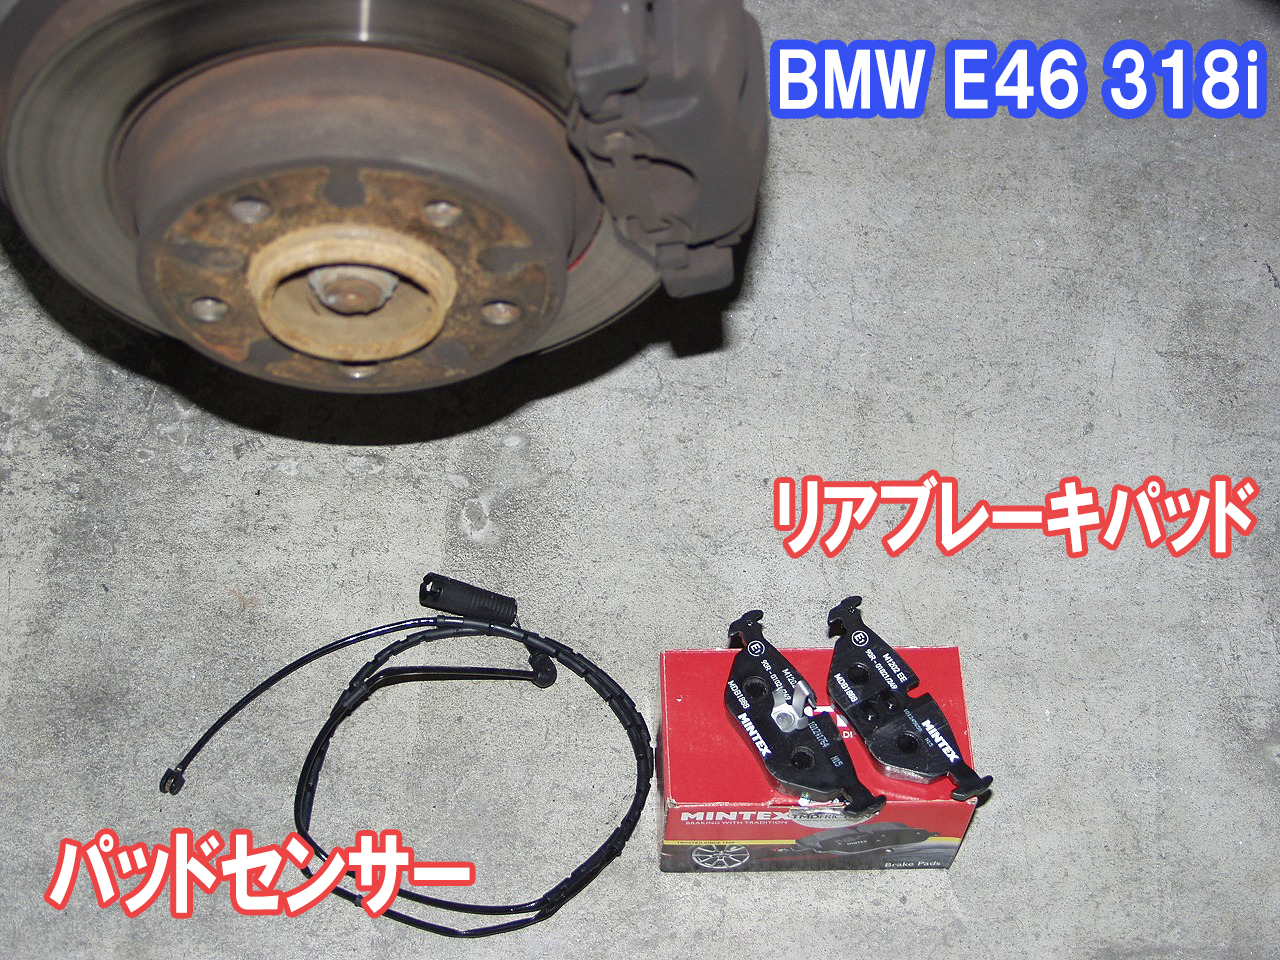 BMW E46 ブレーキパッド交換は社外部品がお得です。